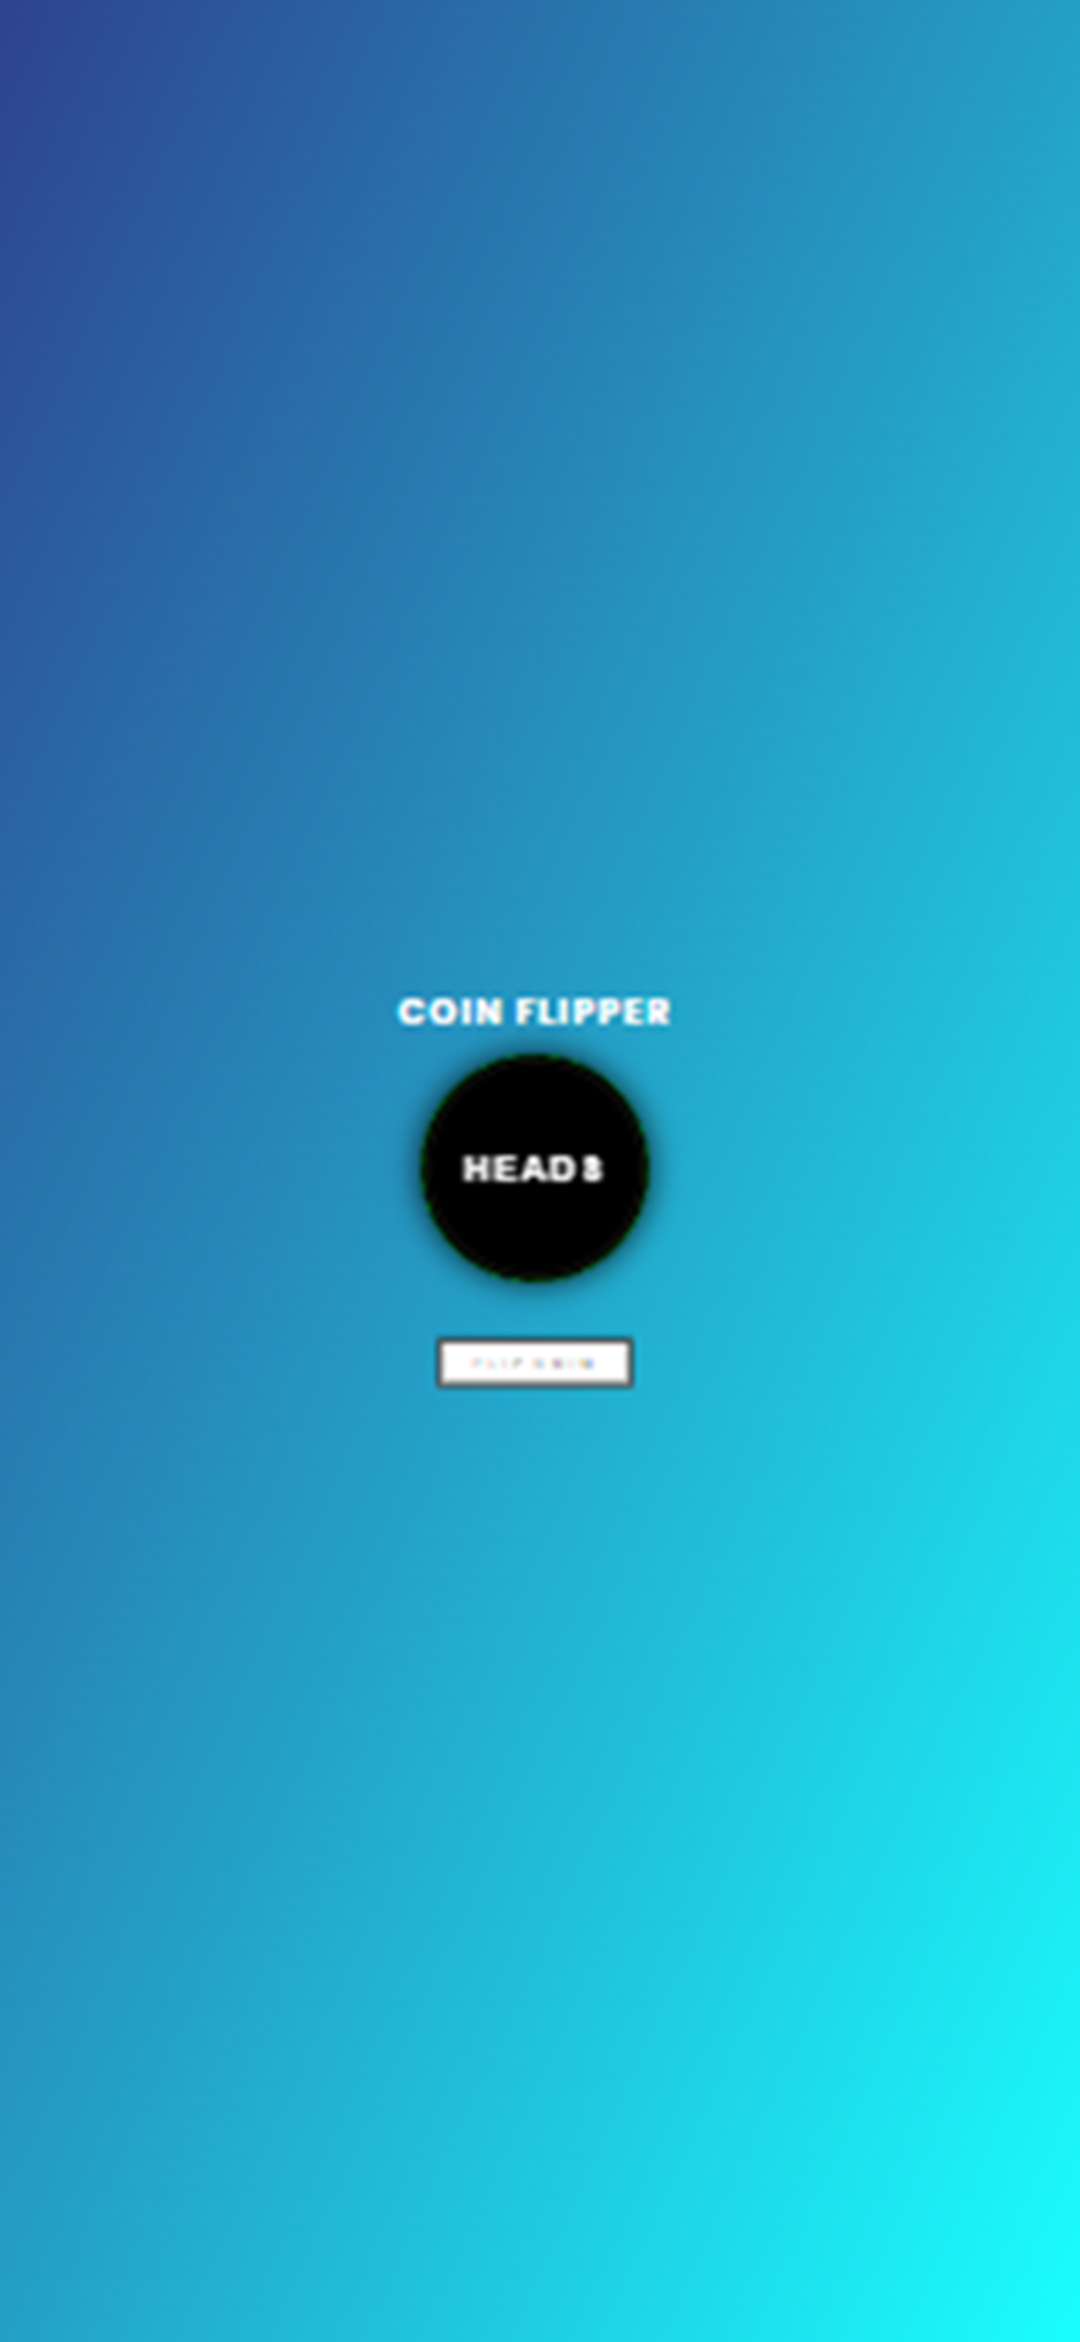 Flip A Coin